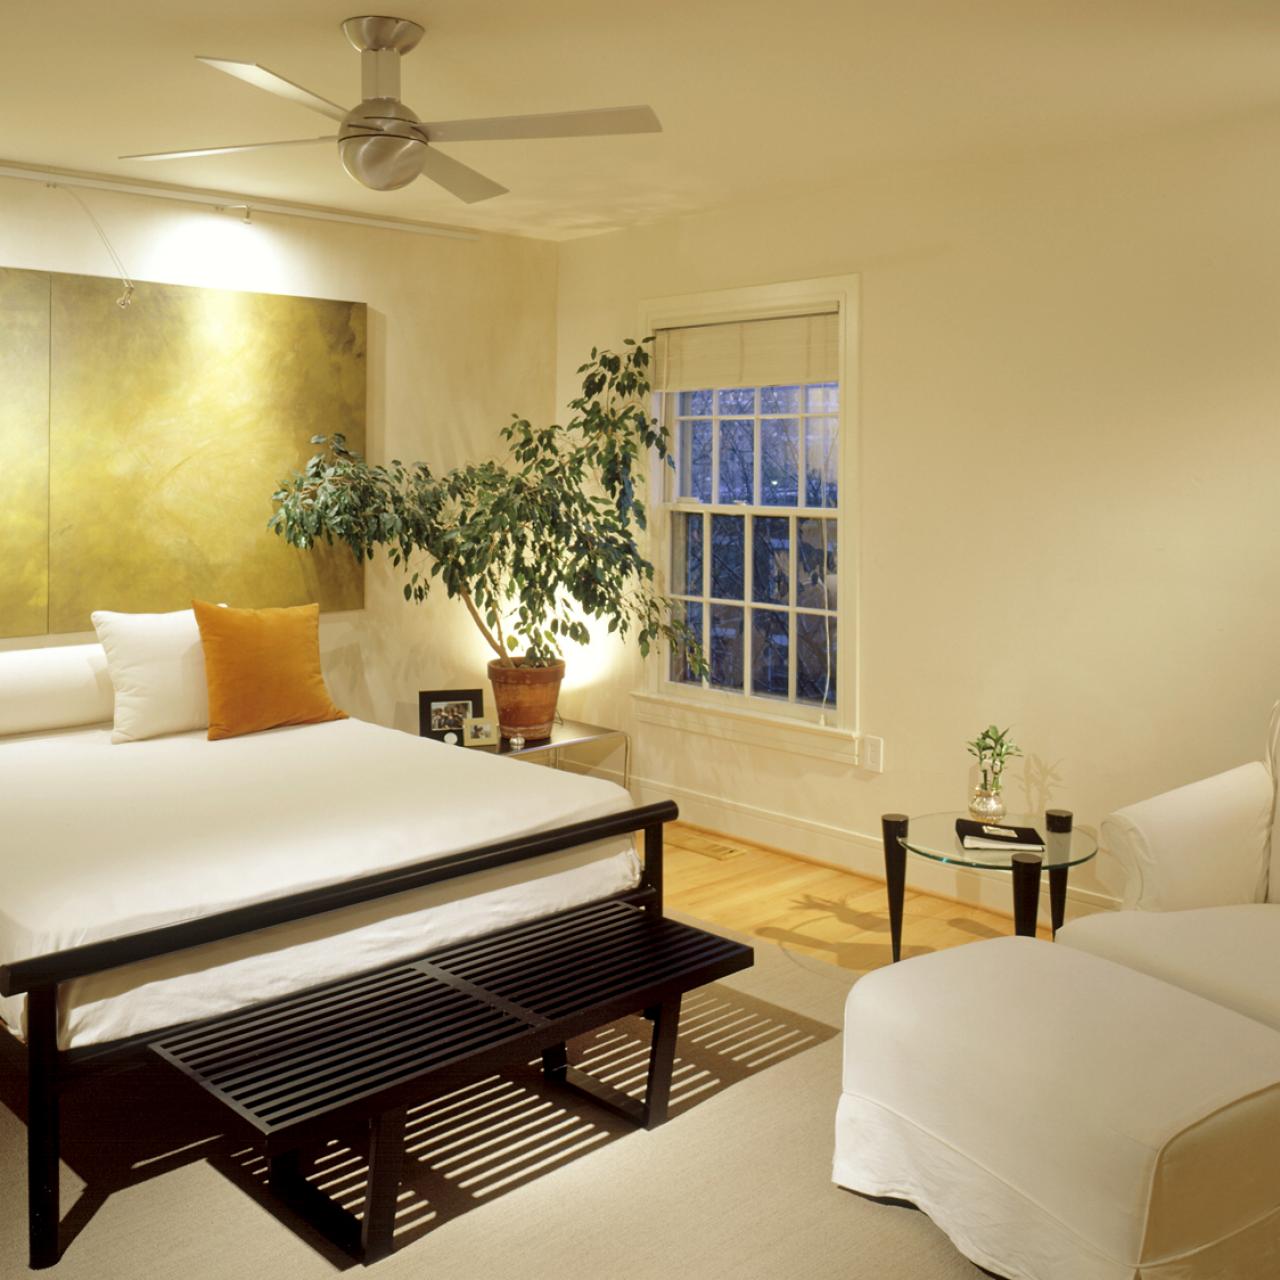 décoration moderne chambre élégant tableau tête de lit originale idée déco coussin draps blancs